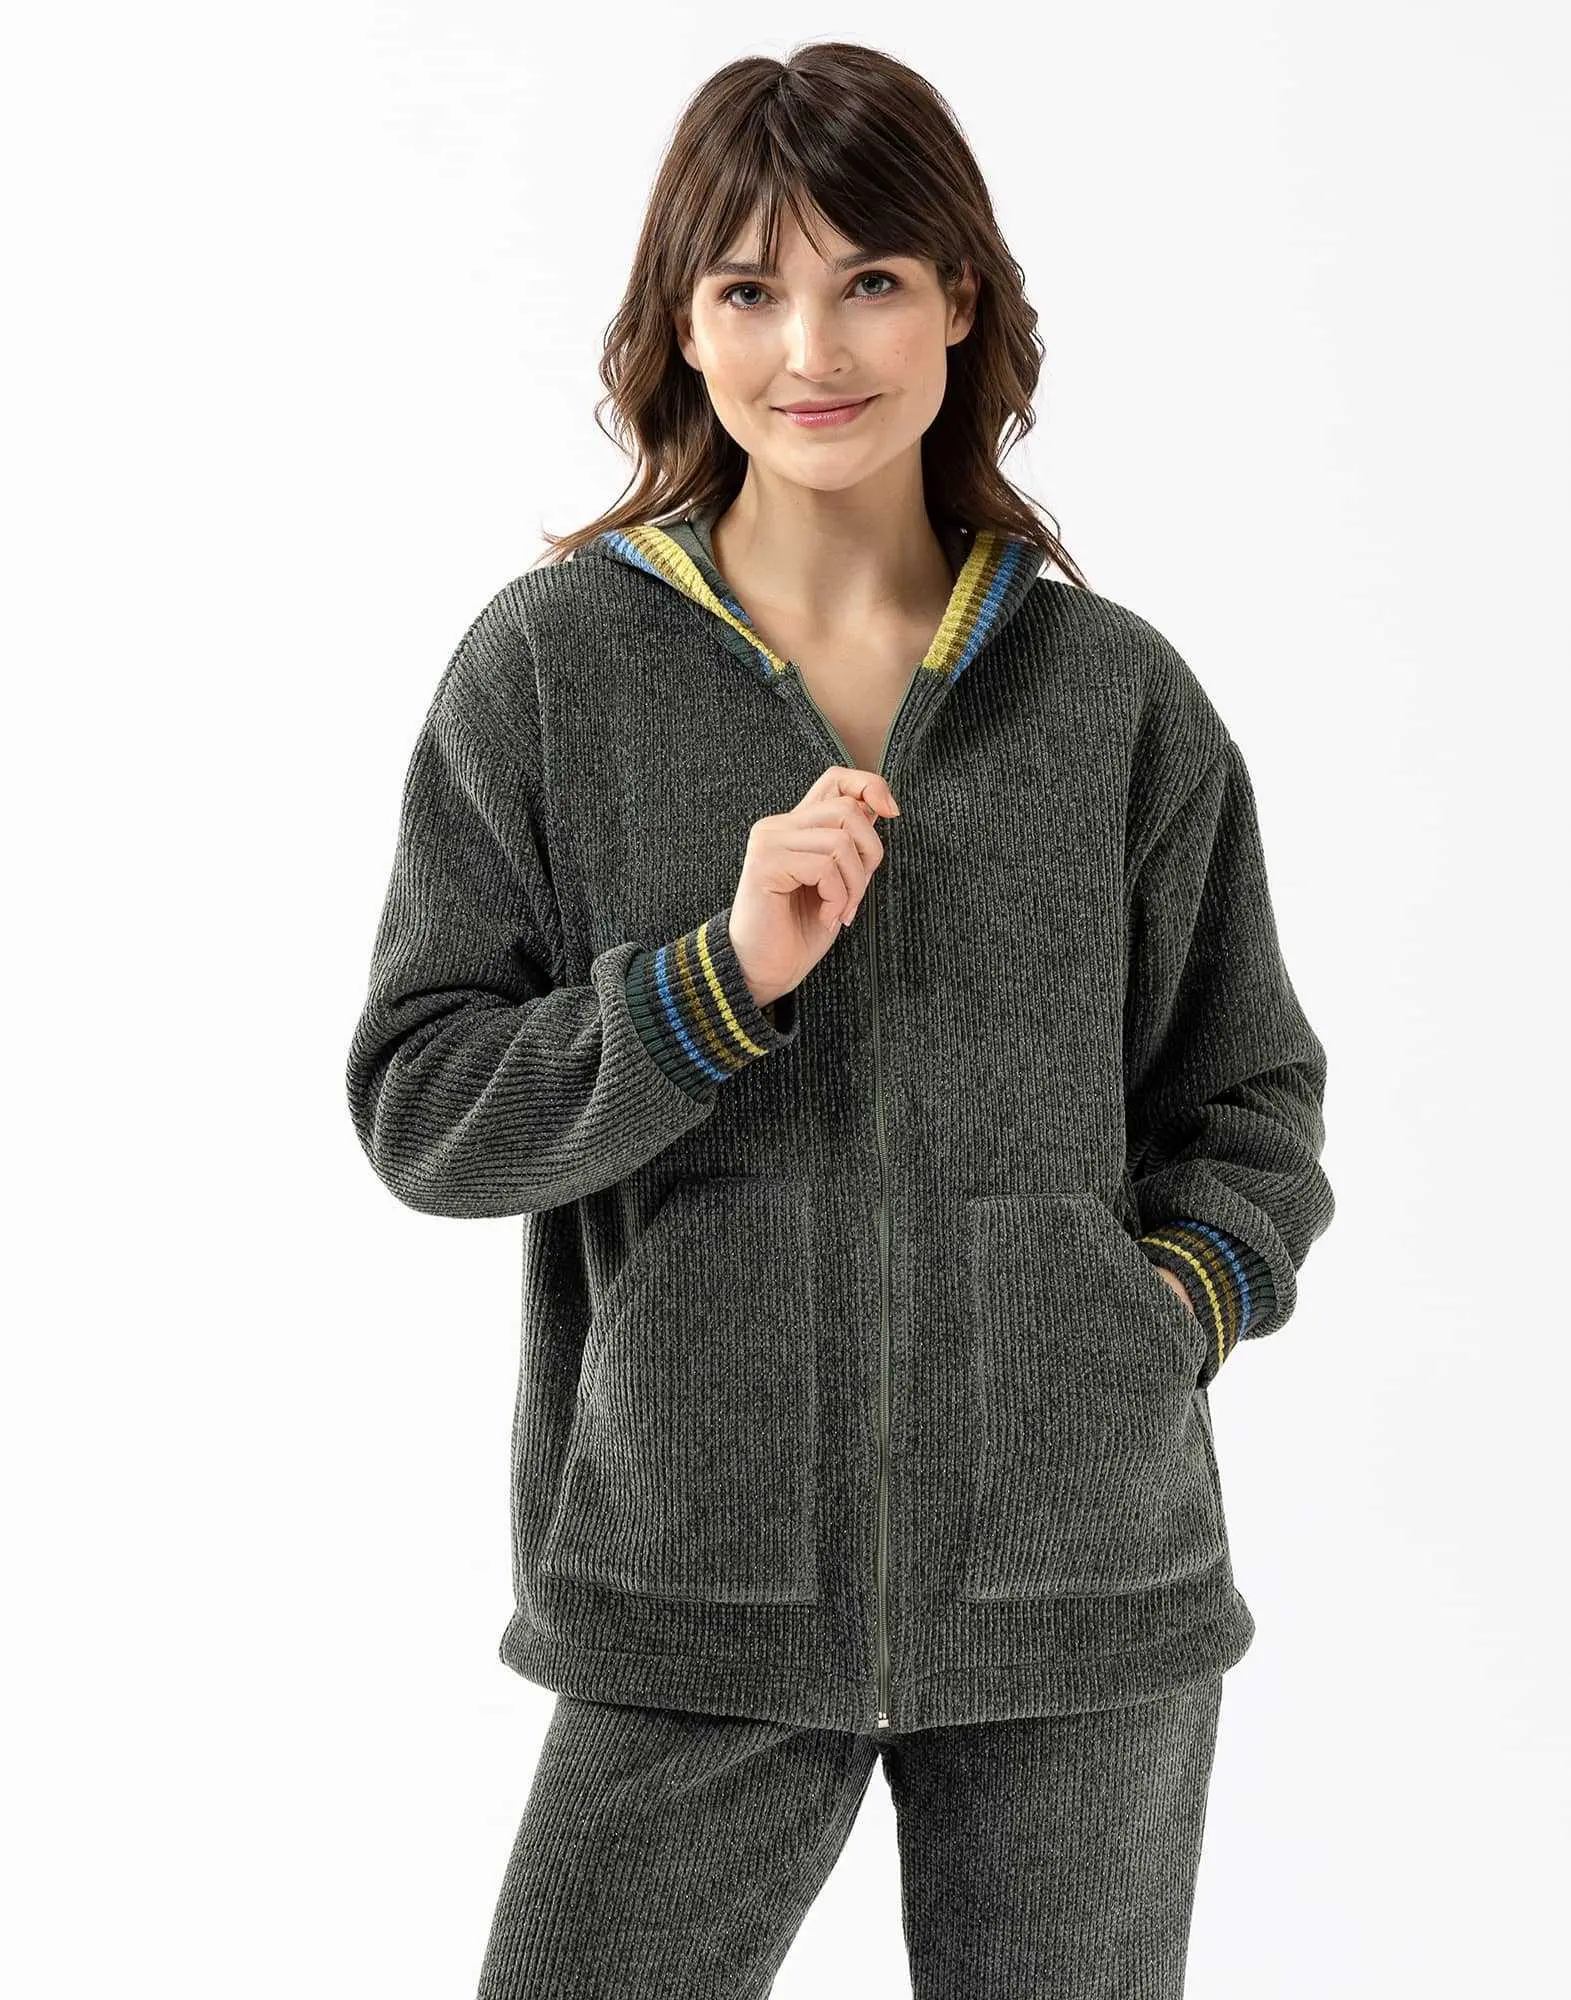 Veste sweat zippée en maille tricot lurex ICONIC 670 lichen  | Lingerie le Chat